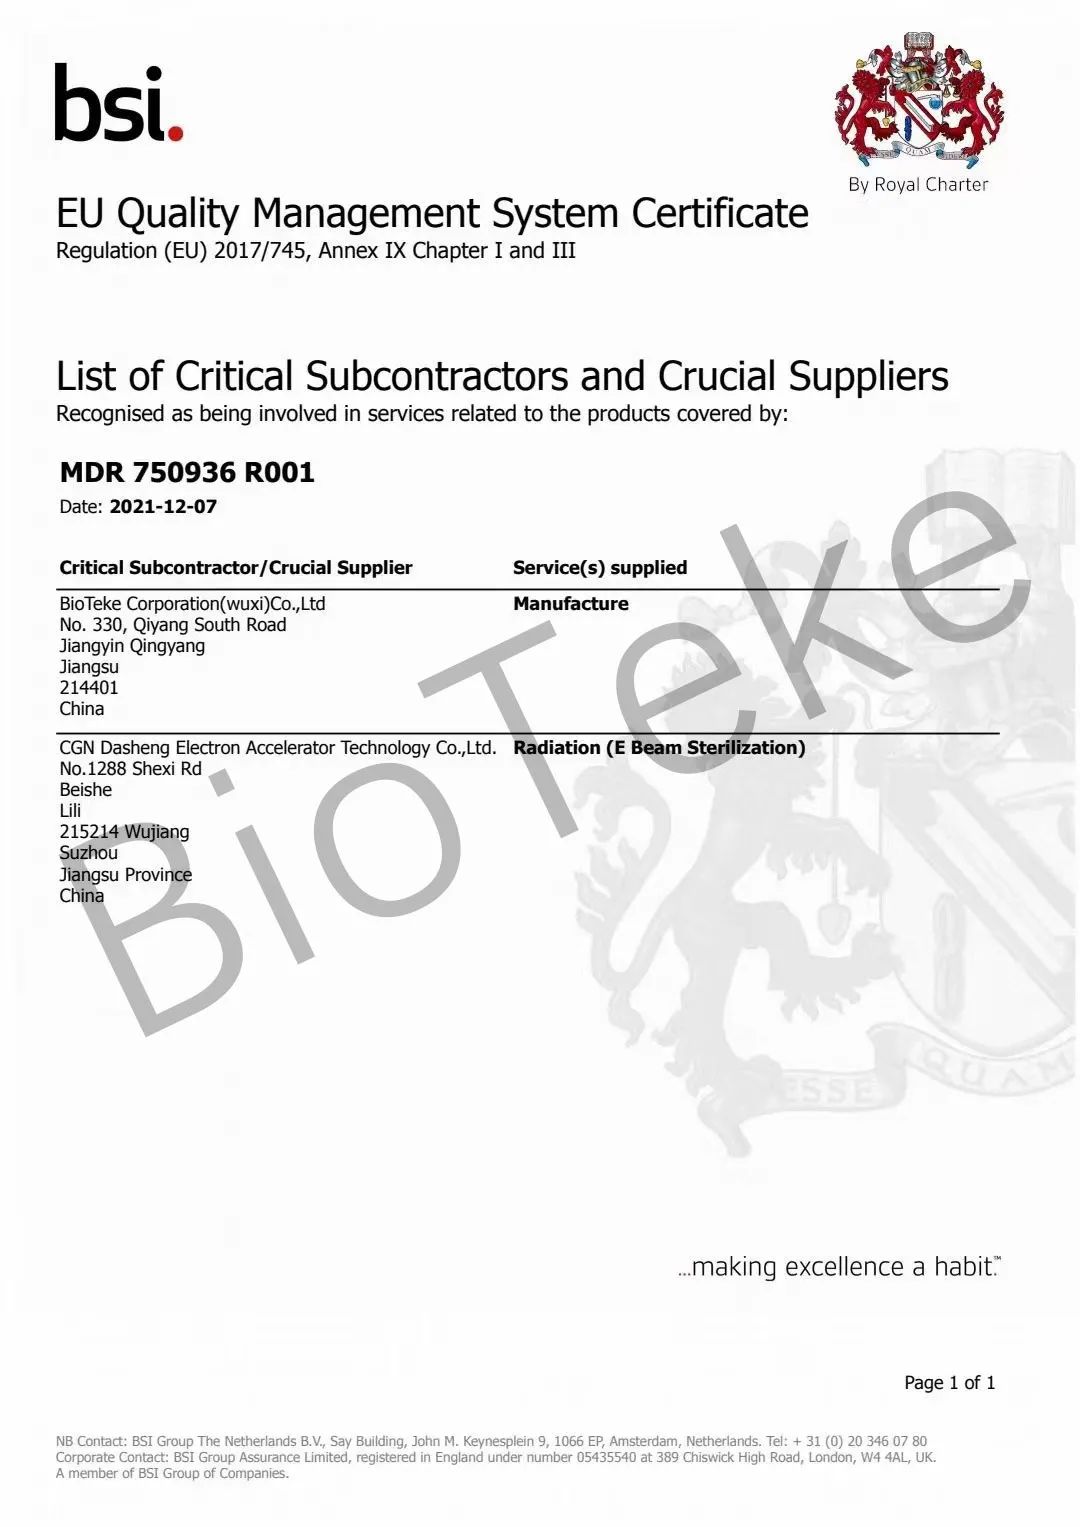 百泰克植绒拭子获得BSI CE认证，可大量出口！